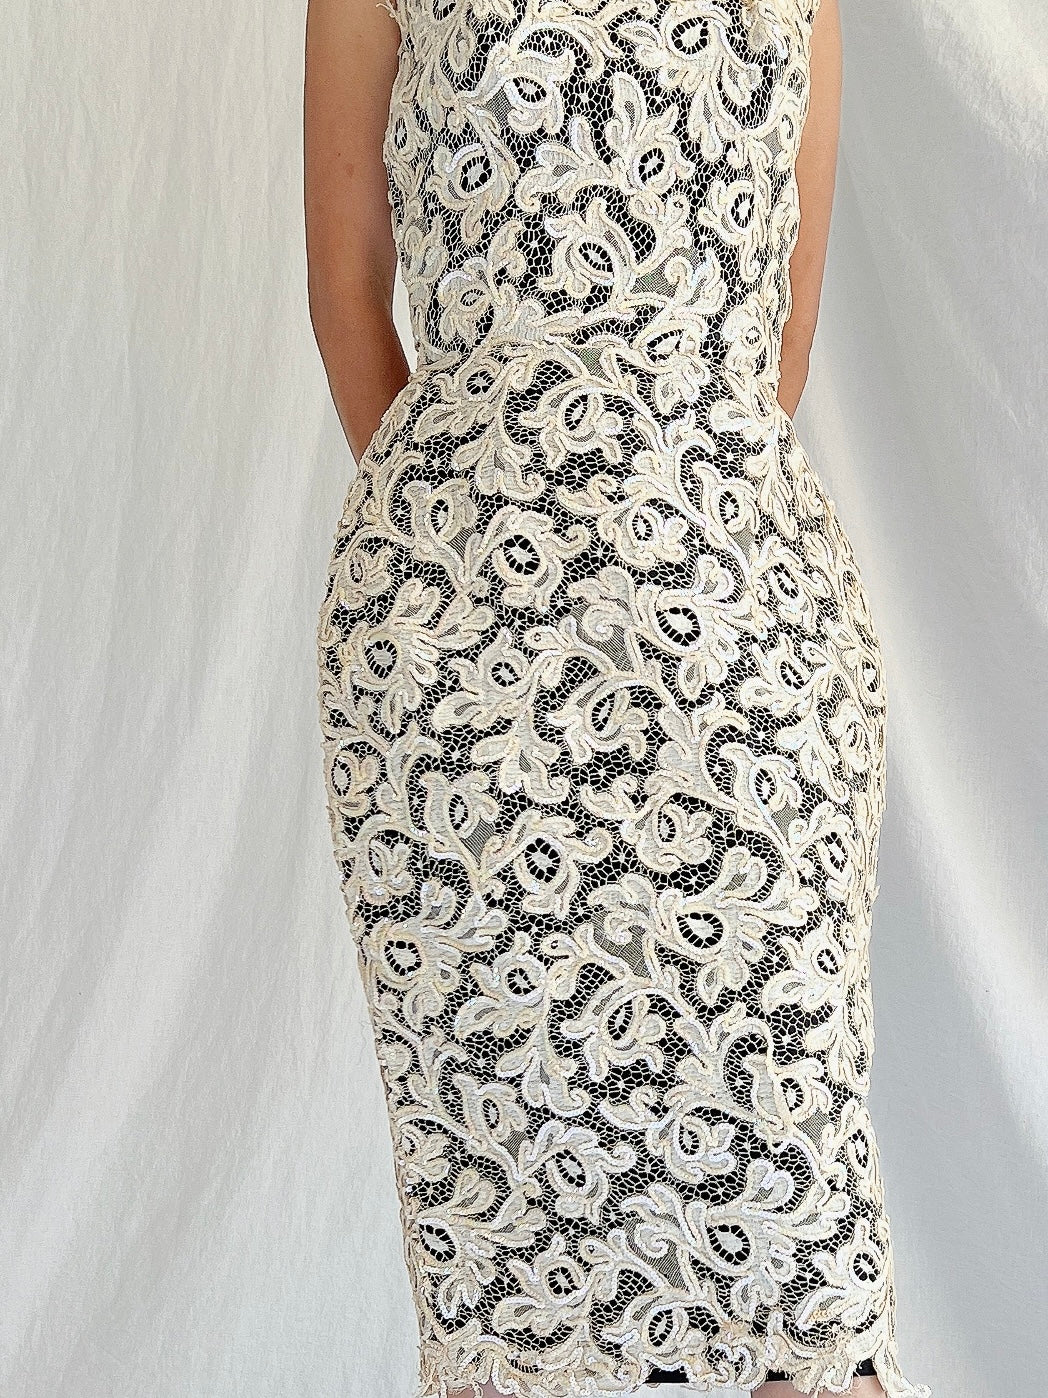 1960s Lace Wiggle Dress - XS